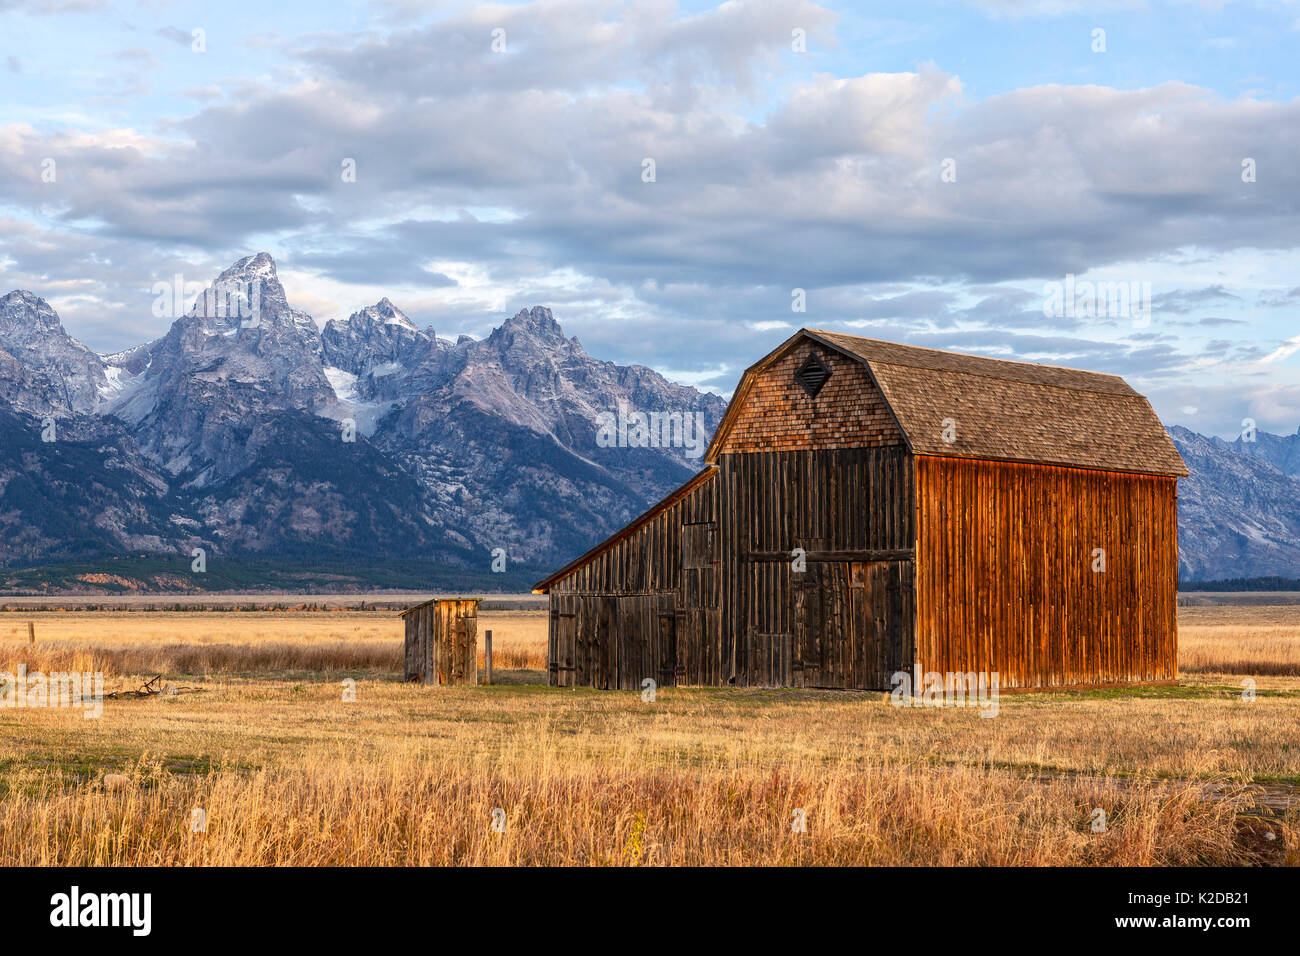 Rango de Teton y granero en Thomas Murphy Homestead, parque nacional Grand Teton, Wyoming, Estados Unidos. De septiembre de 2015. Foto de stock